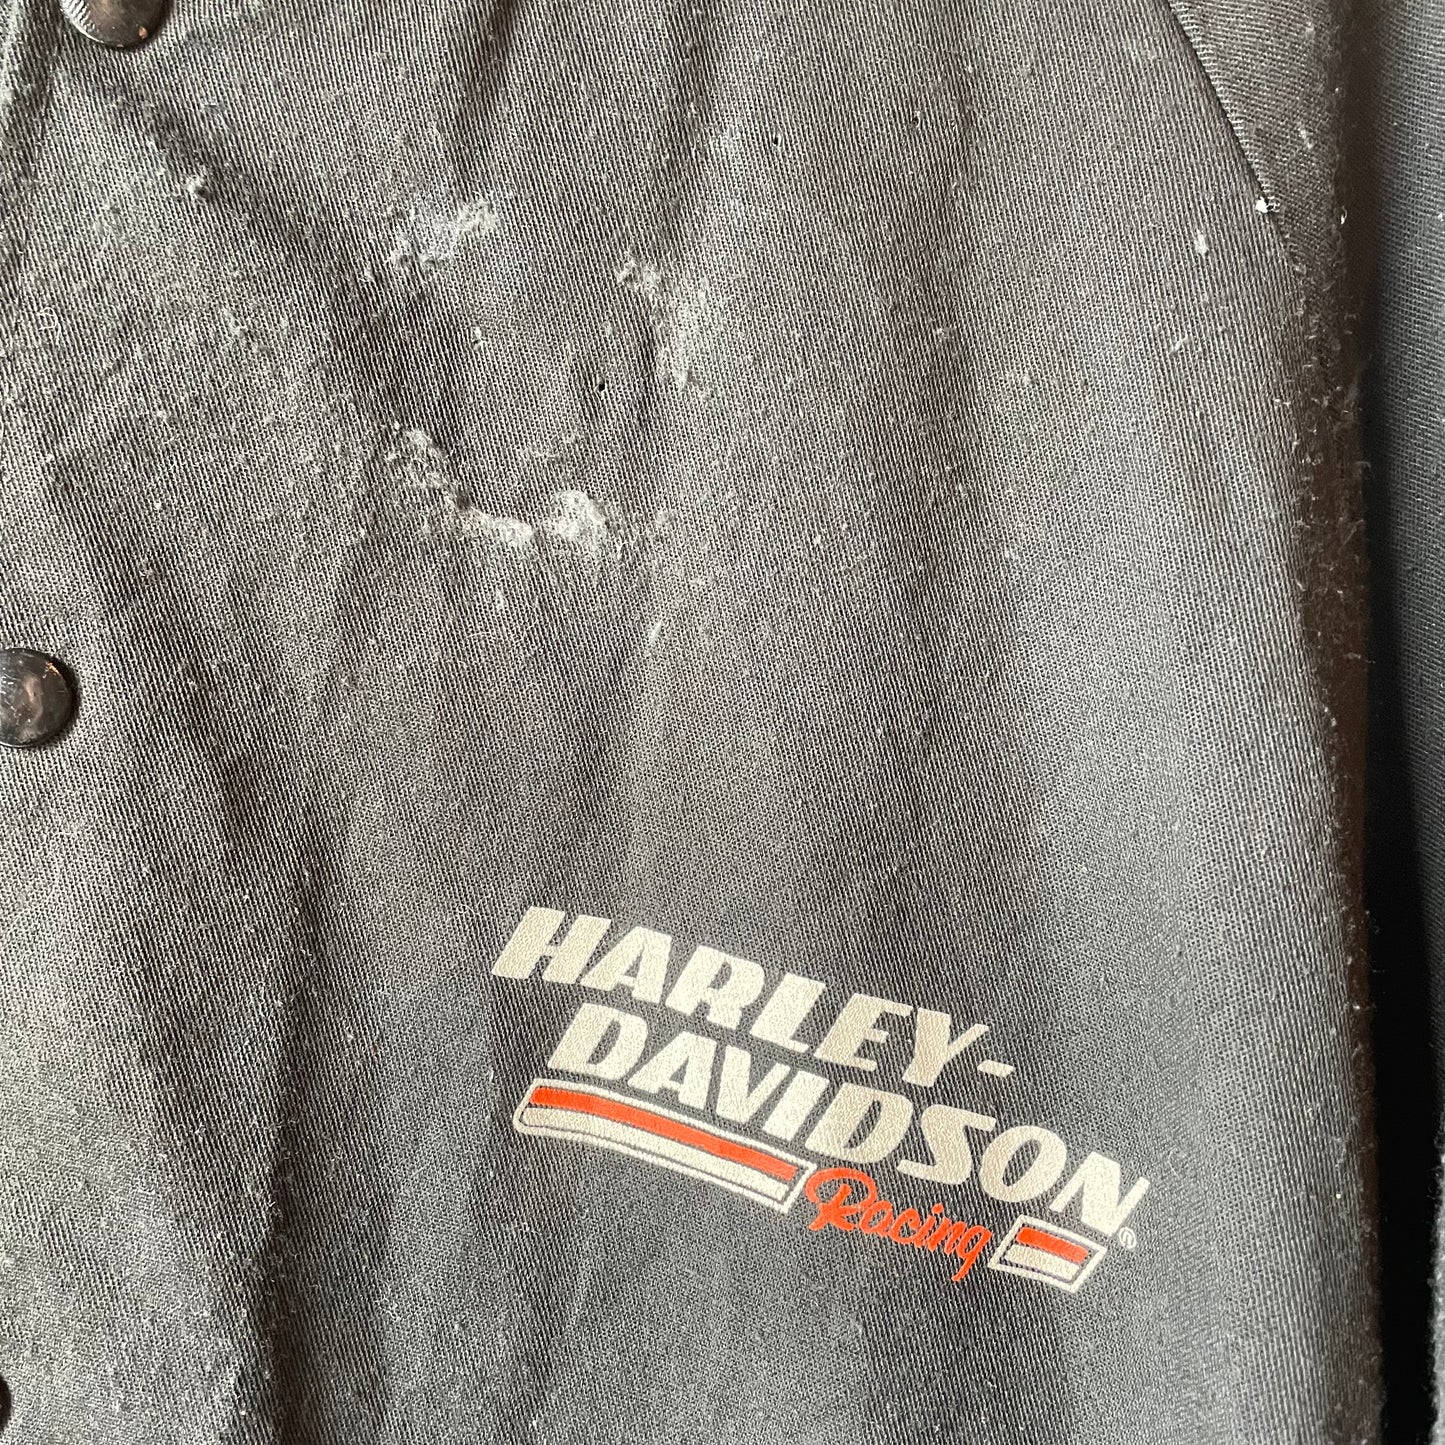 VTG 1980 Harley Davidson Racing Jacket